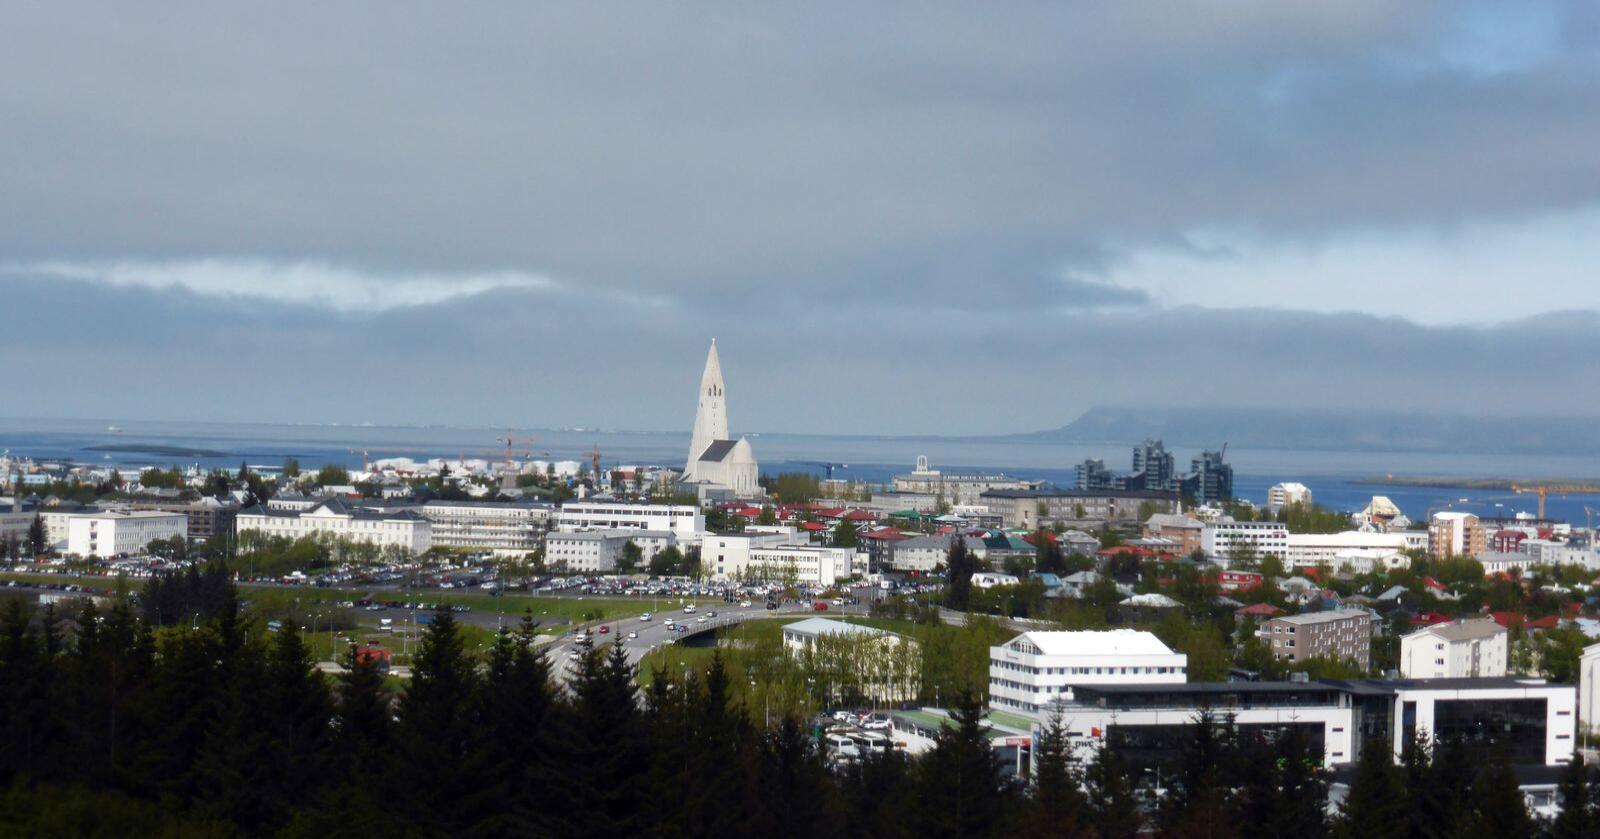 Oversiktsbilde over Reykjavik mot havnen og Hallgrímskirkja. Det har oppstått en heftig krangel om valgresultatet i en islandsk valgkrets. Foto: Berit Keilen / NTB